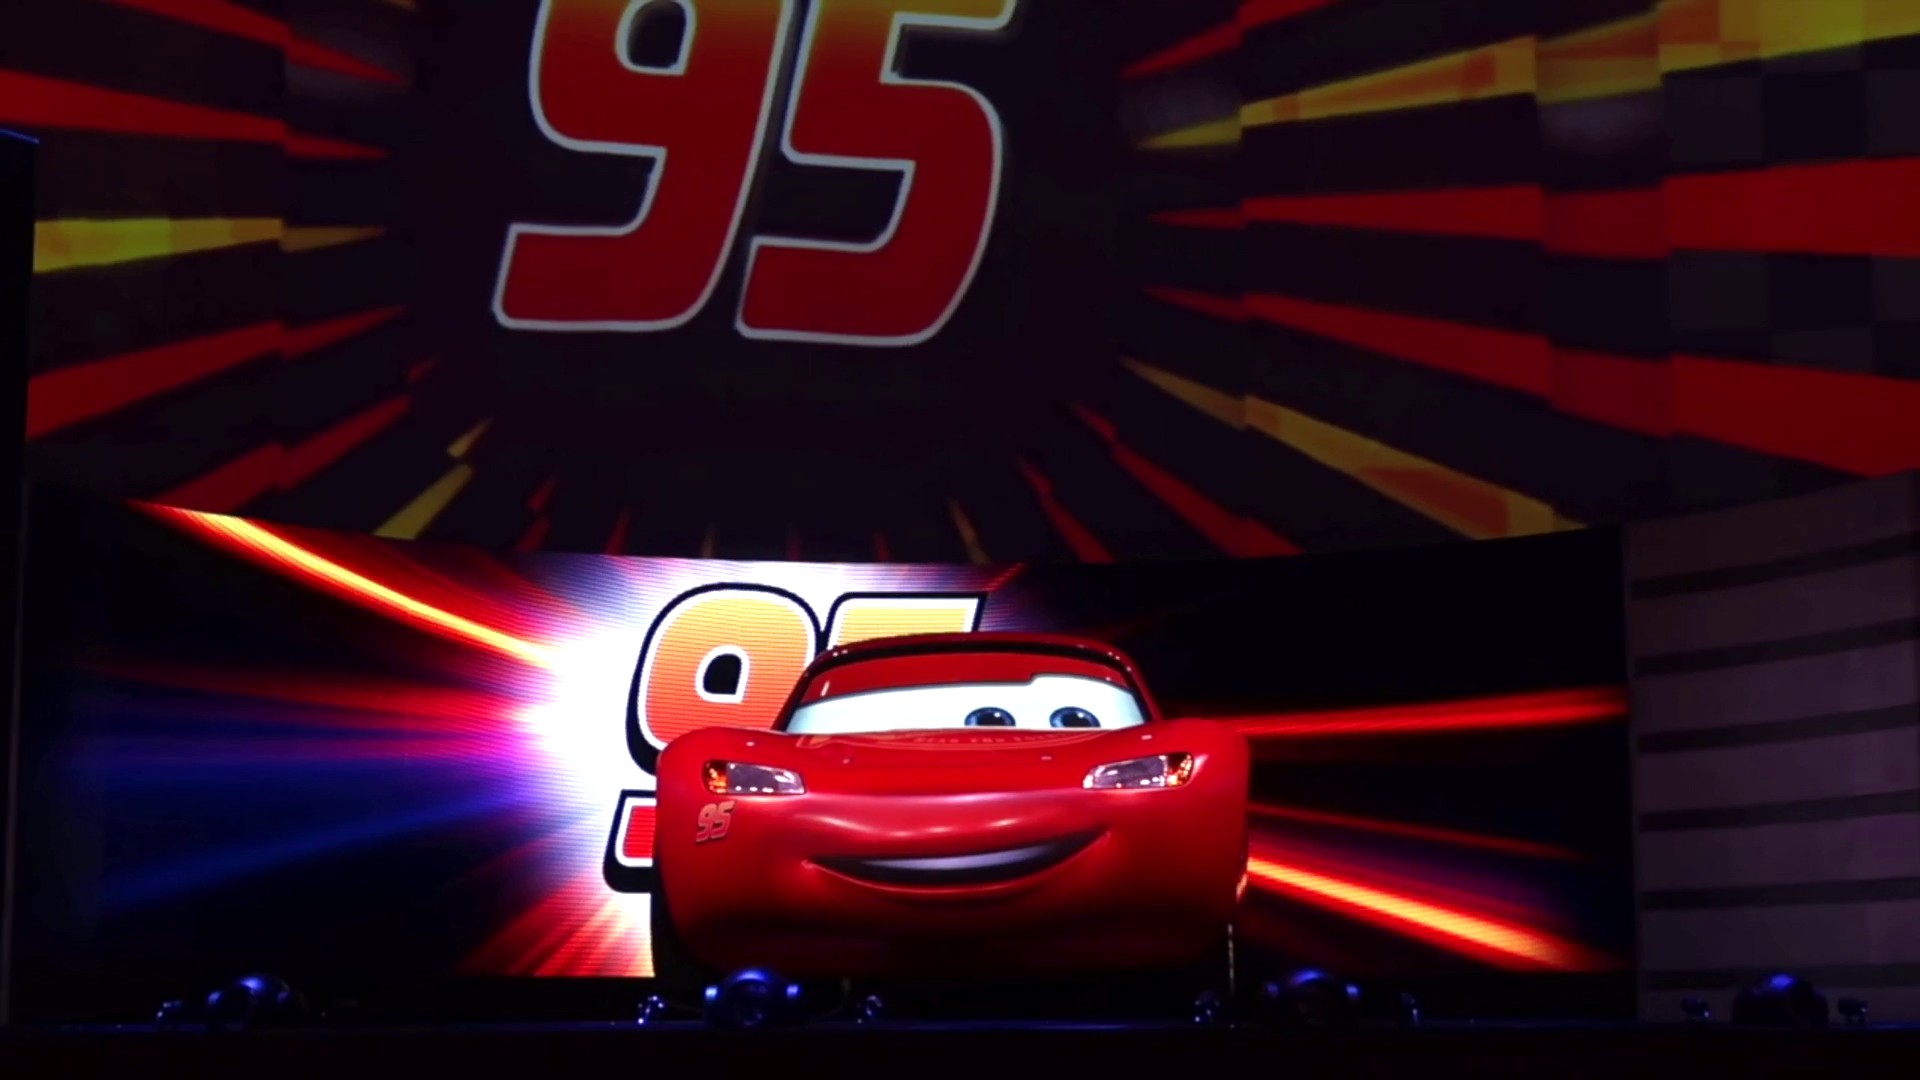 Lightning McQueen's Racing Academy Show Coming to Disney's